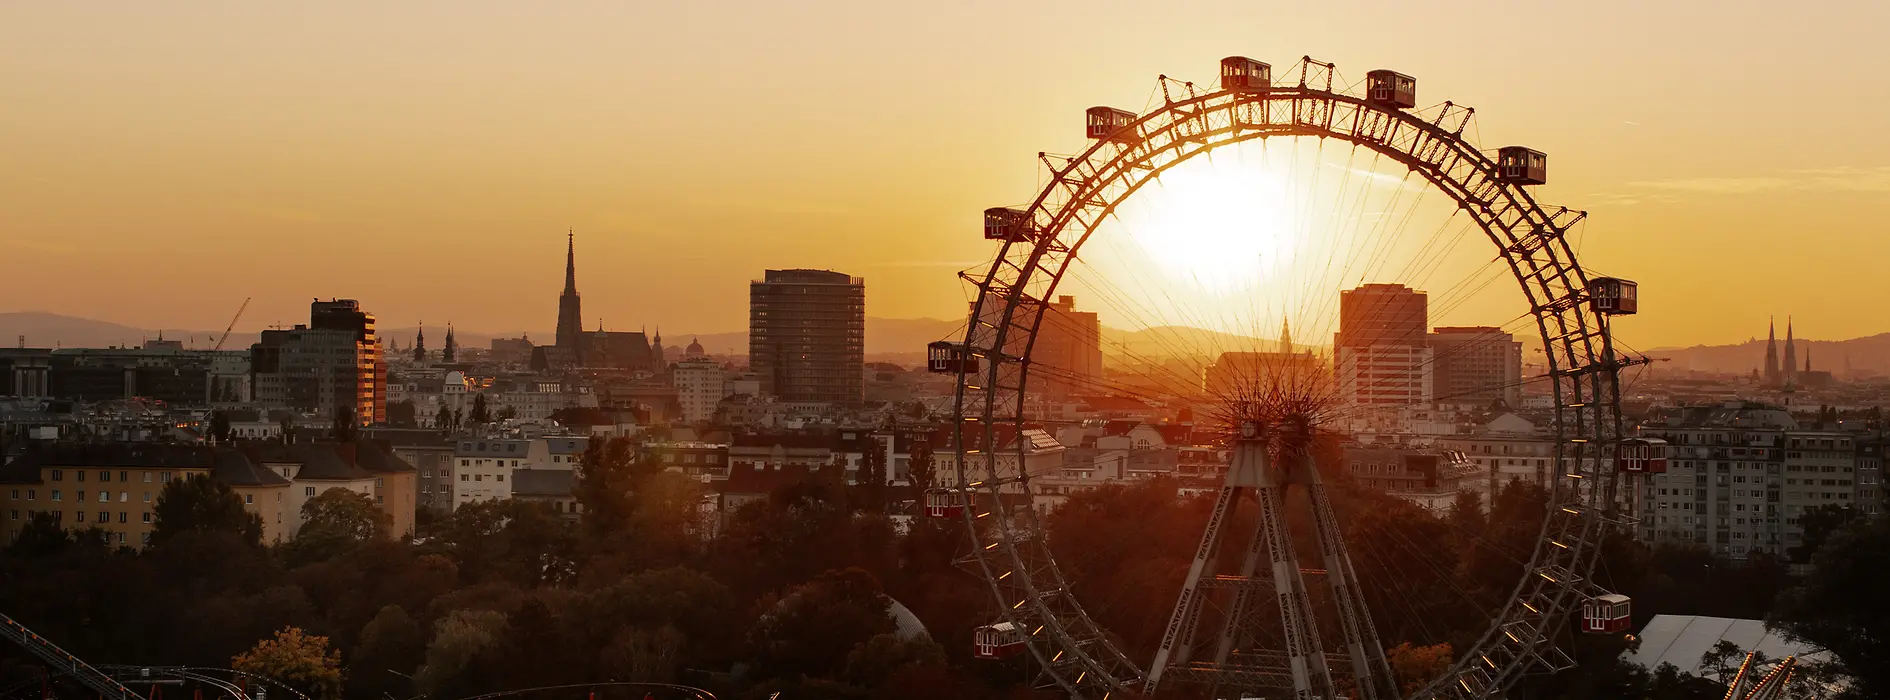 Riesenrad im Wiener Prater, im Hintergrund Wiener Skyline im Sonnenuntergang